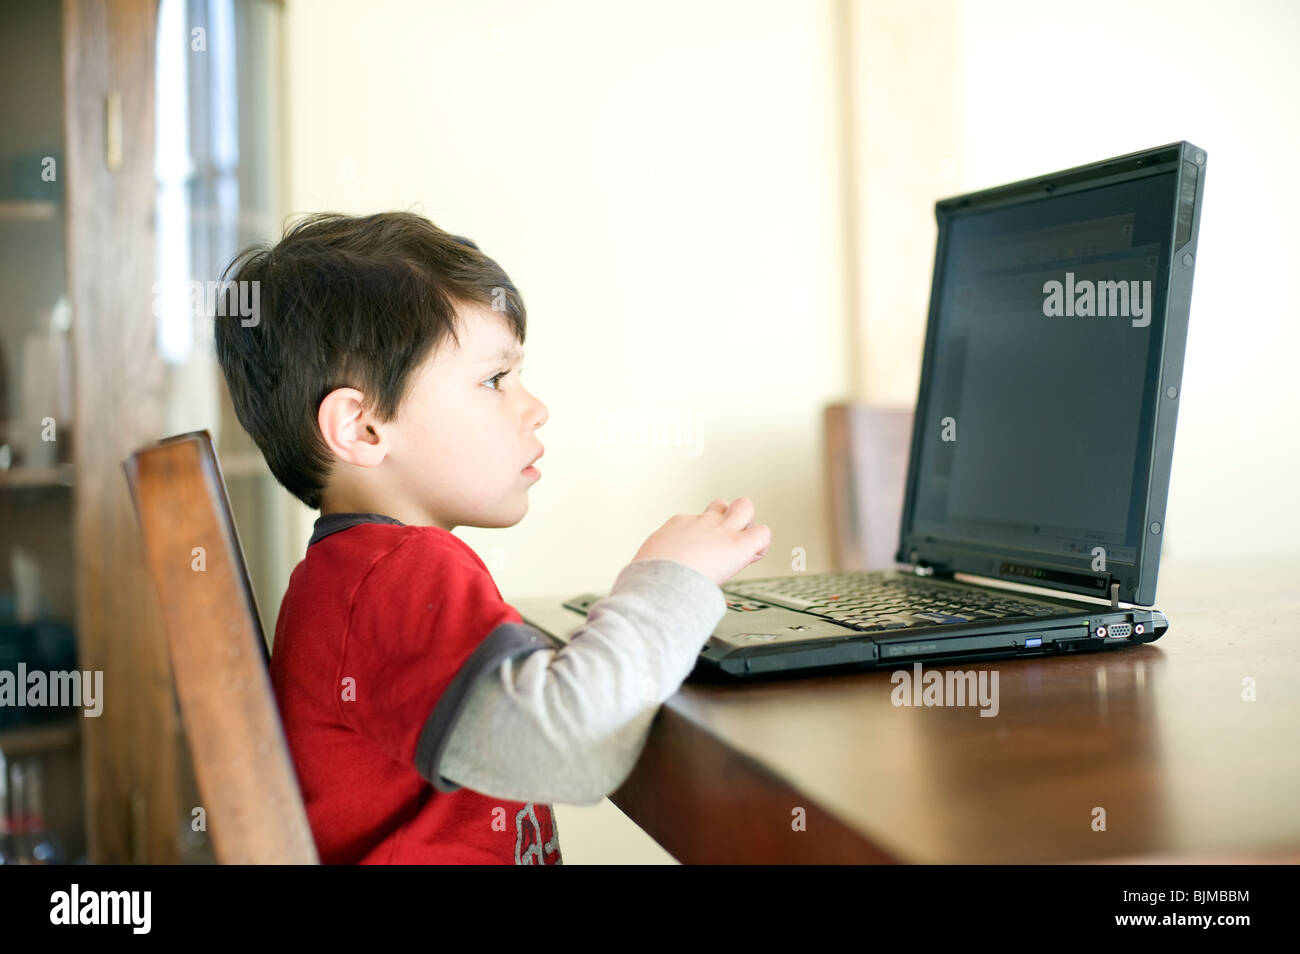 4 et 1/2 ans Hispanic boy surfe sur internet sur son ordinateur portable à la maison. Parution du modèle. Banque D'Images